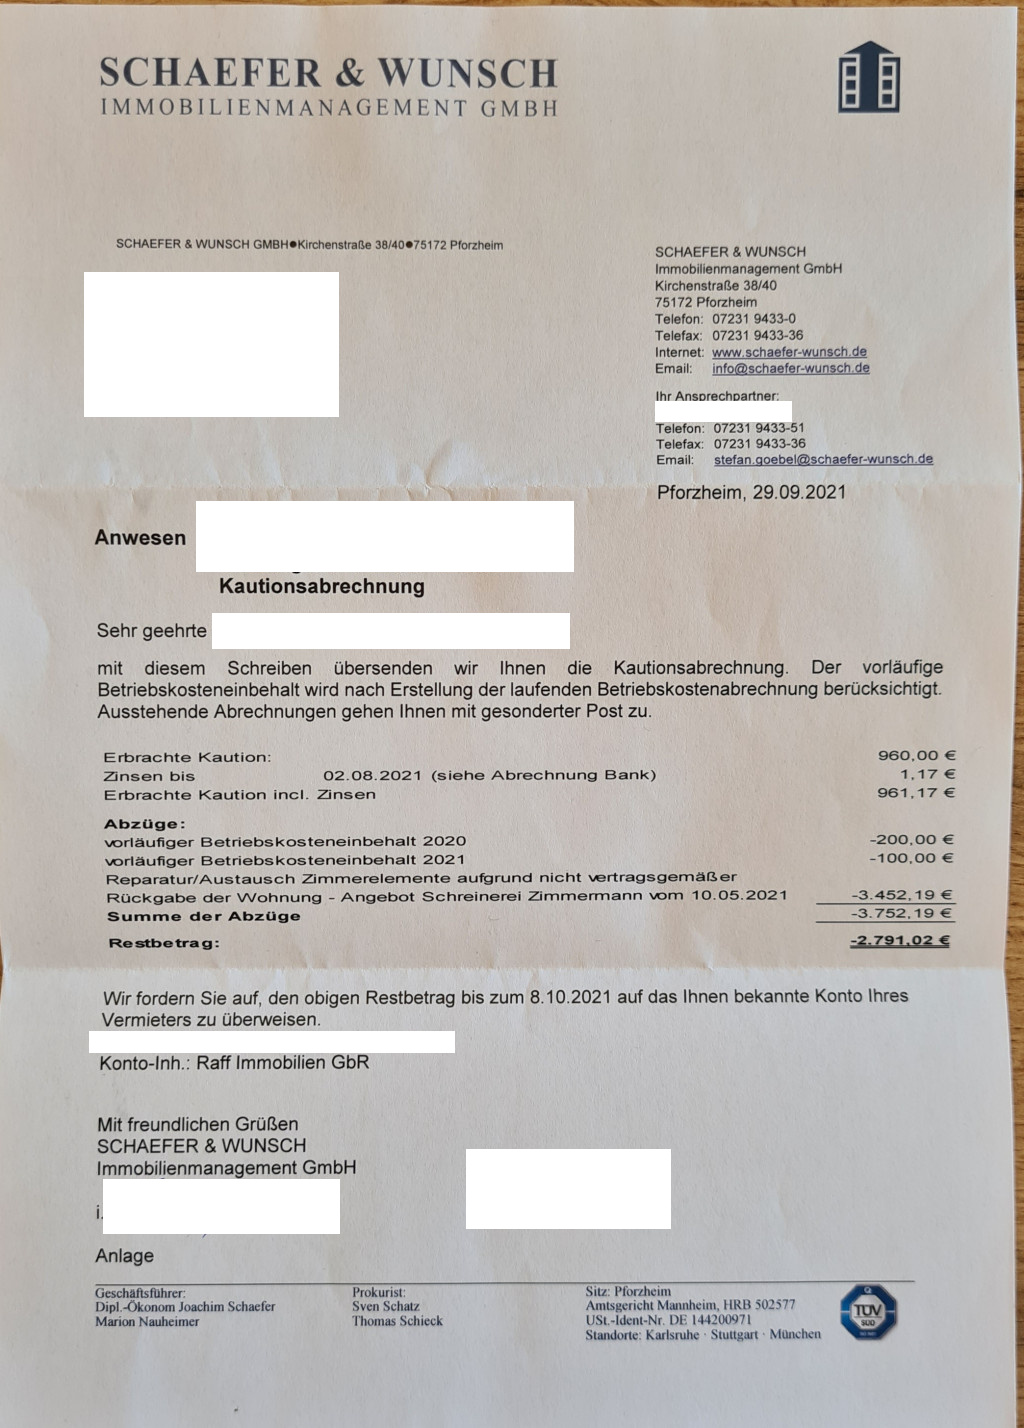 Schaefer und Wunsch Immobilien aus Pforzheim Rechnung über fast 4000€ nach Auszug